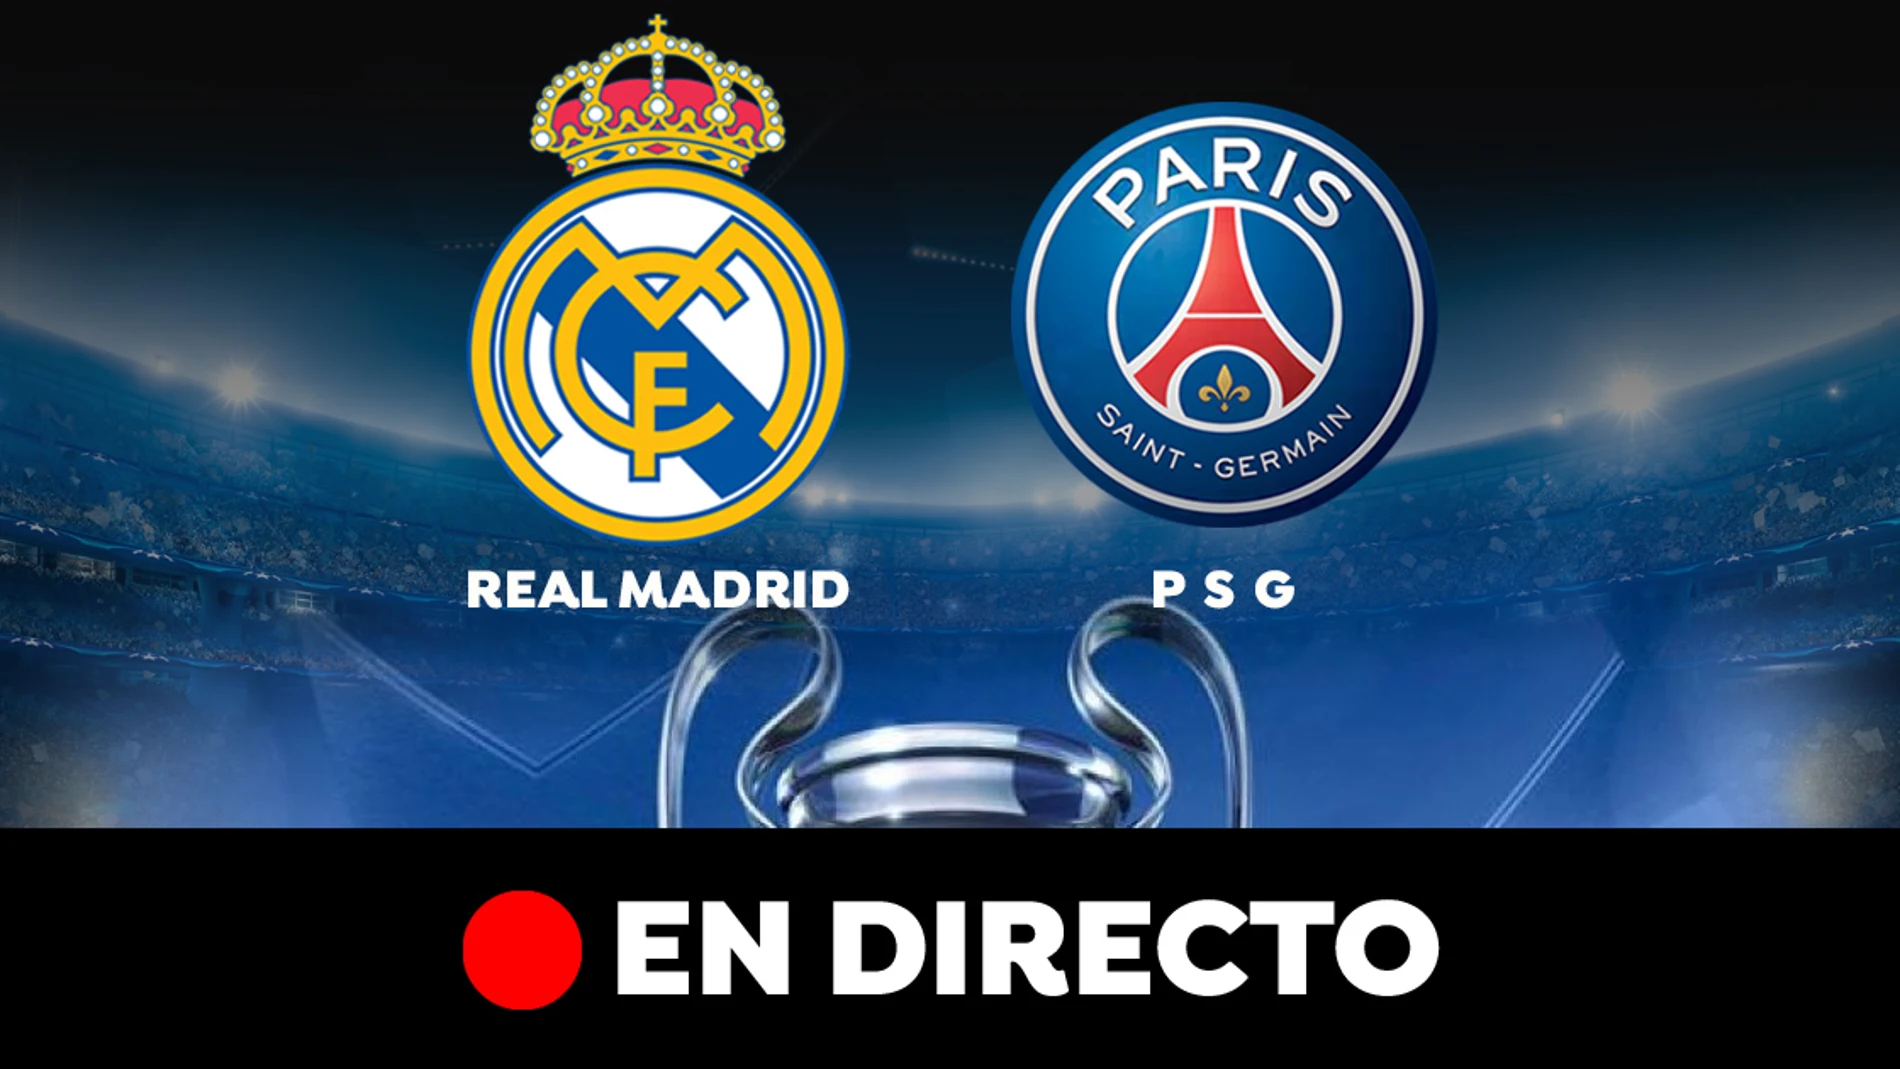 Almacén escaldadura apetito Real Madrid - PSG: Resultado, resumen y goles de la Champions League, en  directo (3-1)